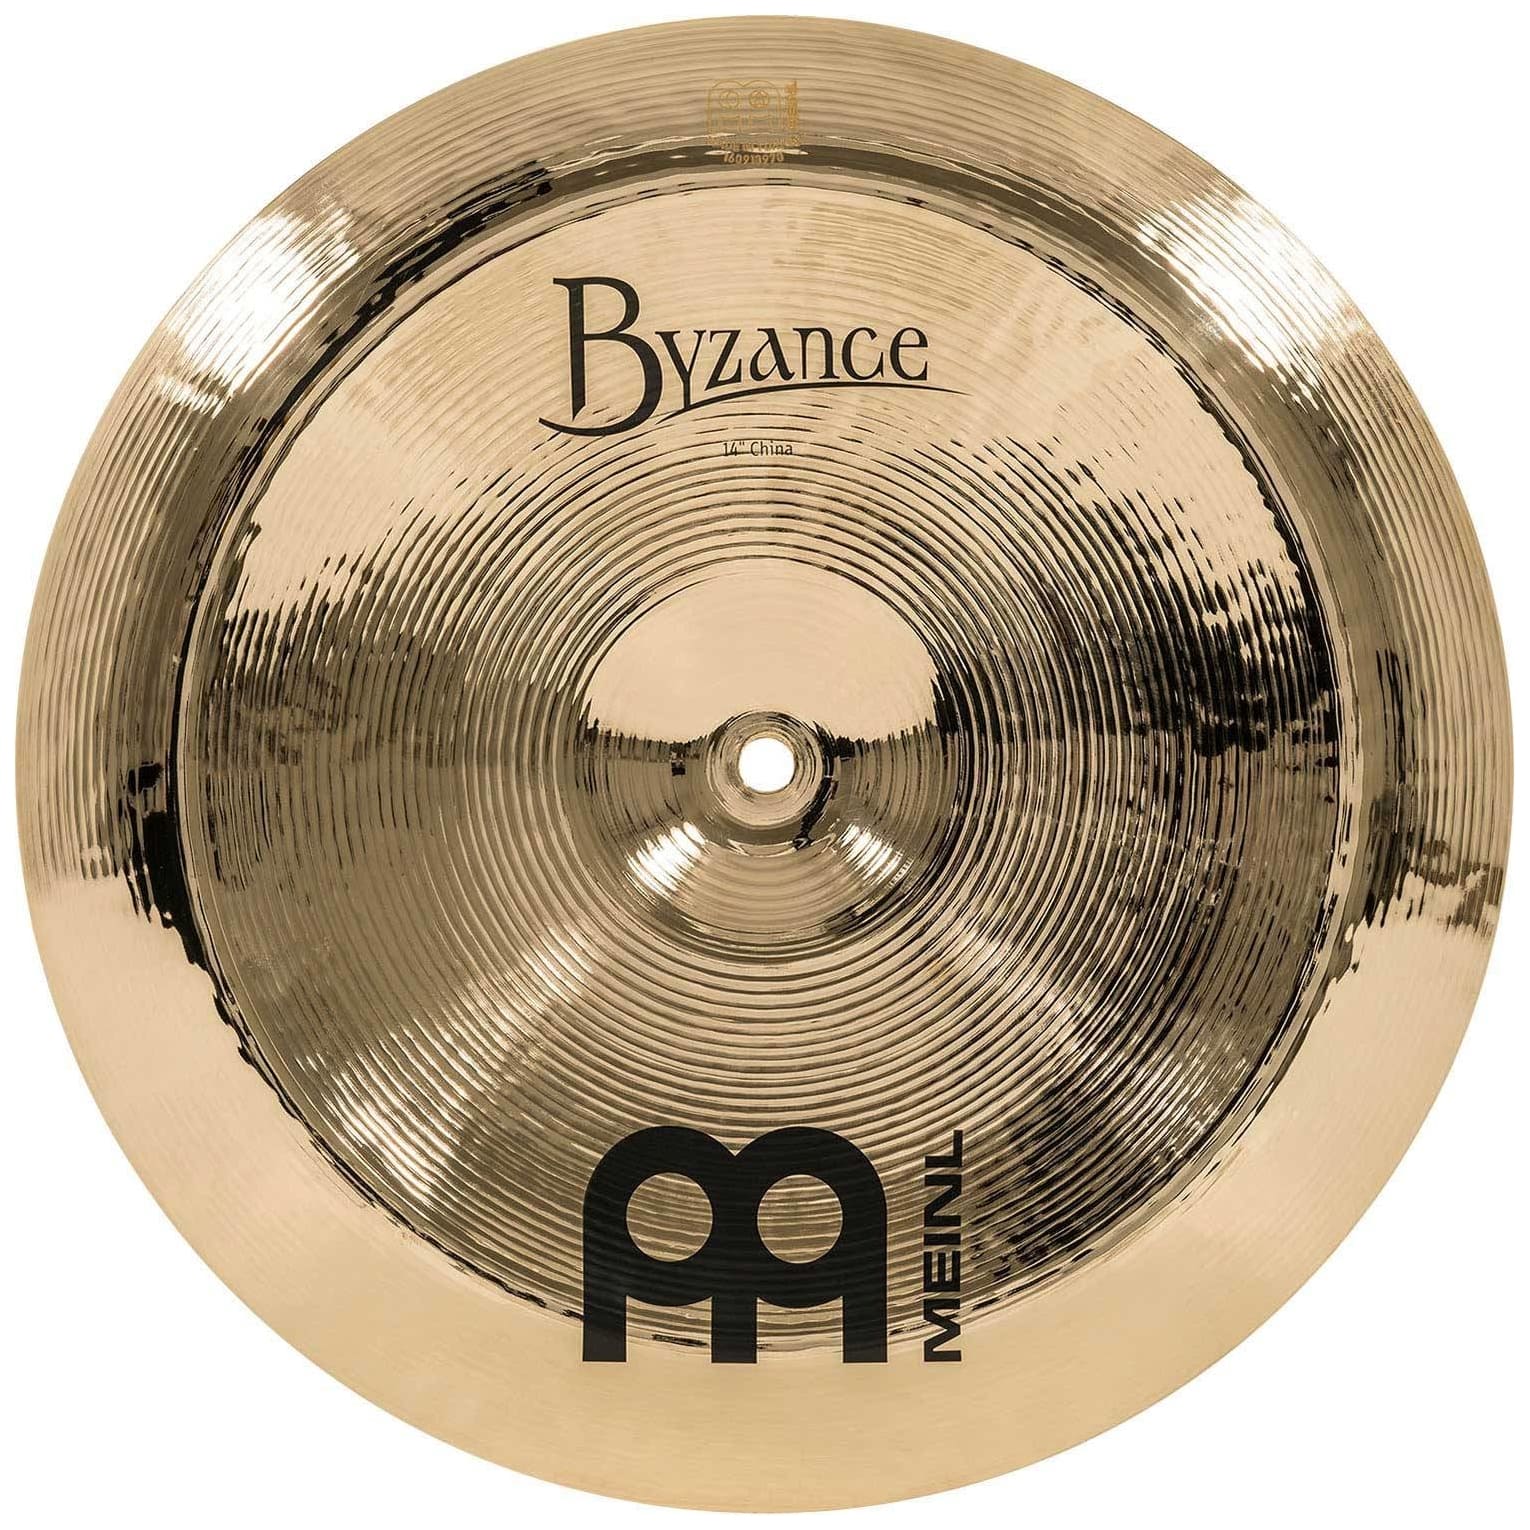 Meinl Cymbals B14CH-B - 14" Byzance Brilliant China 